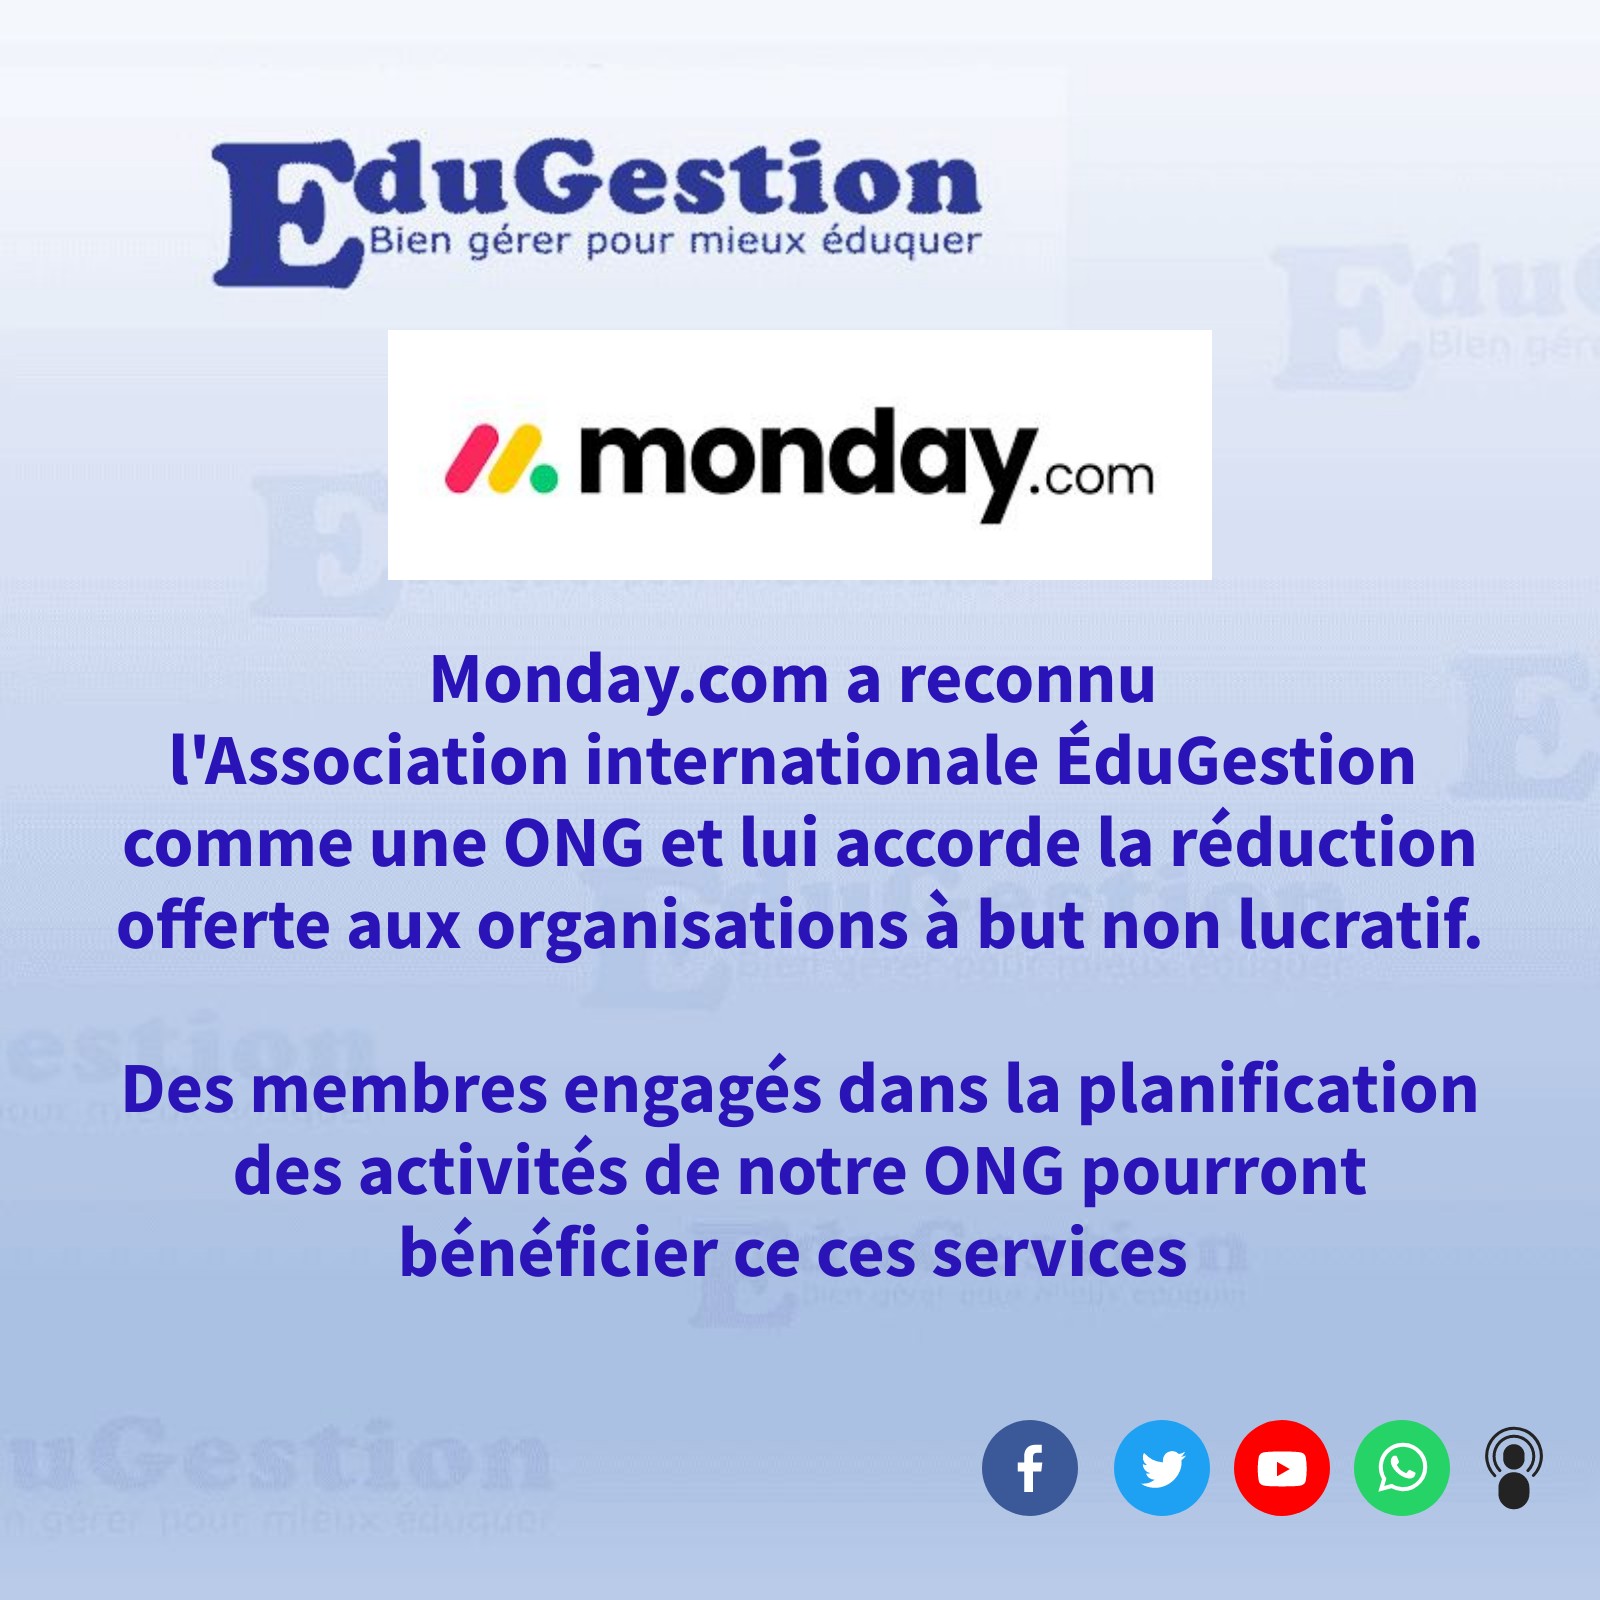 Monday.com offre des services gratuits à l'ONG EduGestion